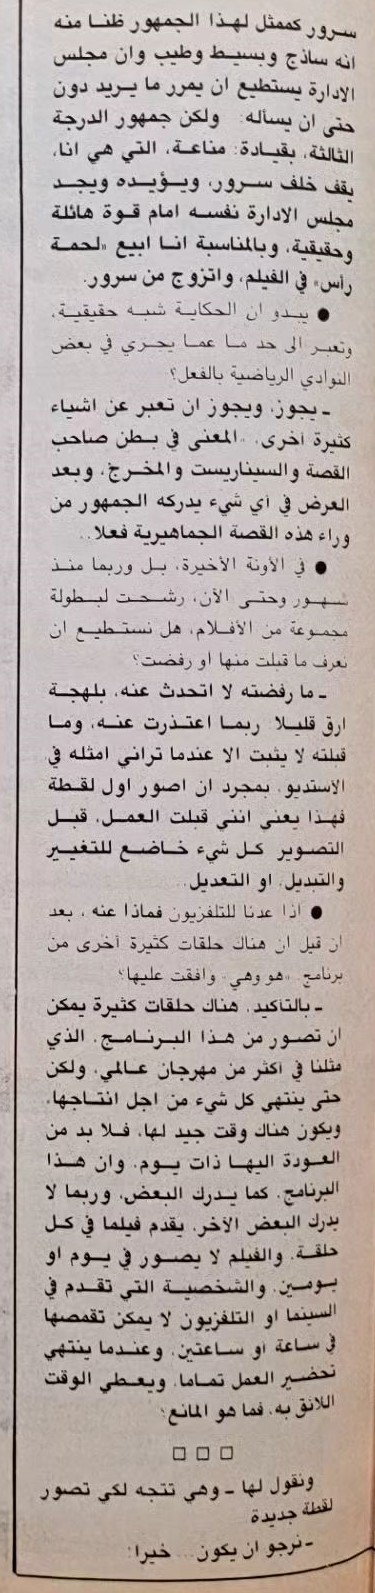 حوار صحفي : حوار مع .. سعاد حسني 1988 م 2106